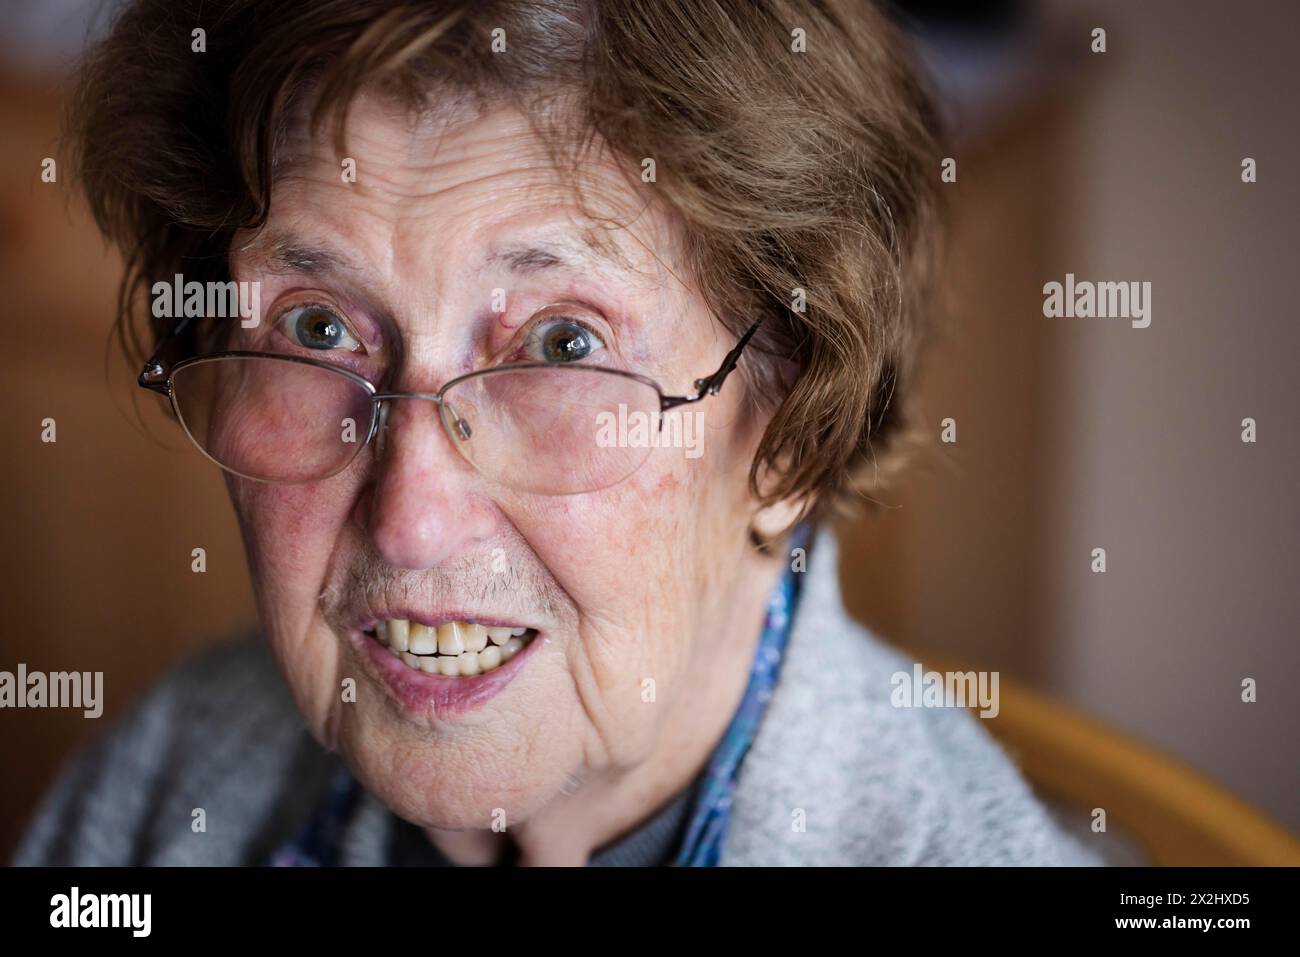 Portrait d'une personne âgée effrayée, gros plan, Cologne, Rhénanie du Nord-Westphalie, Allemagne Banque D'Images